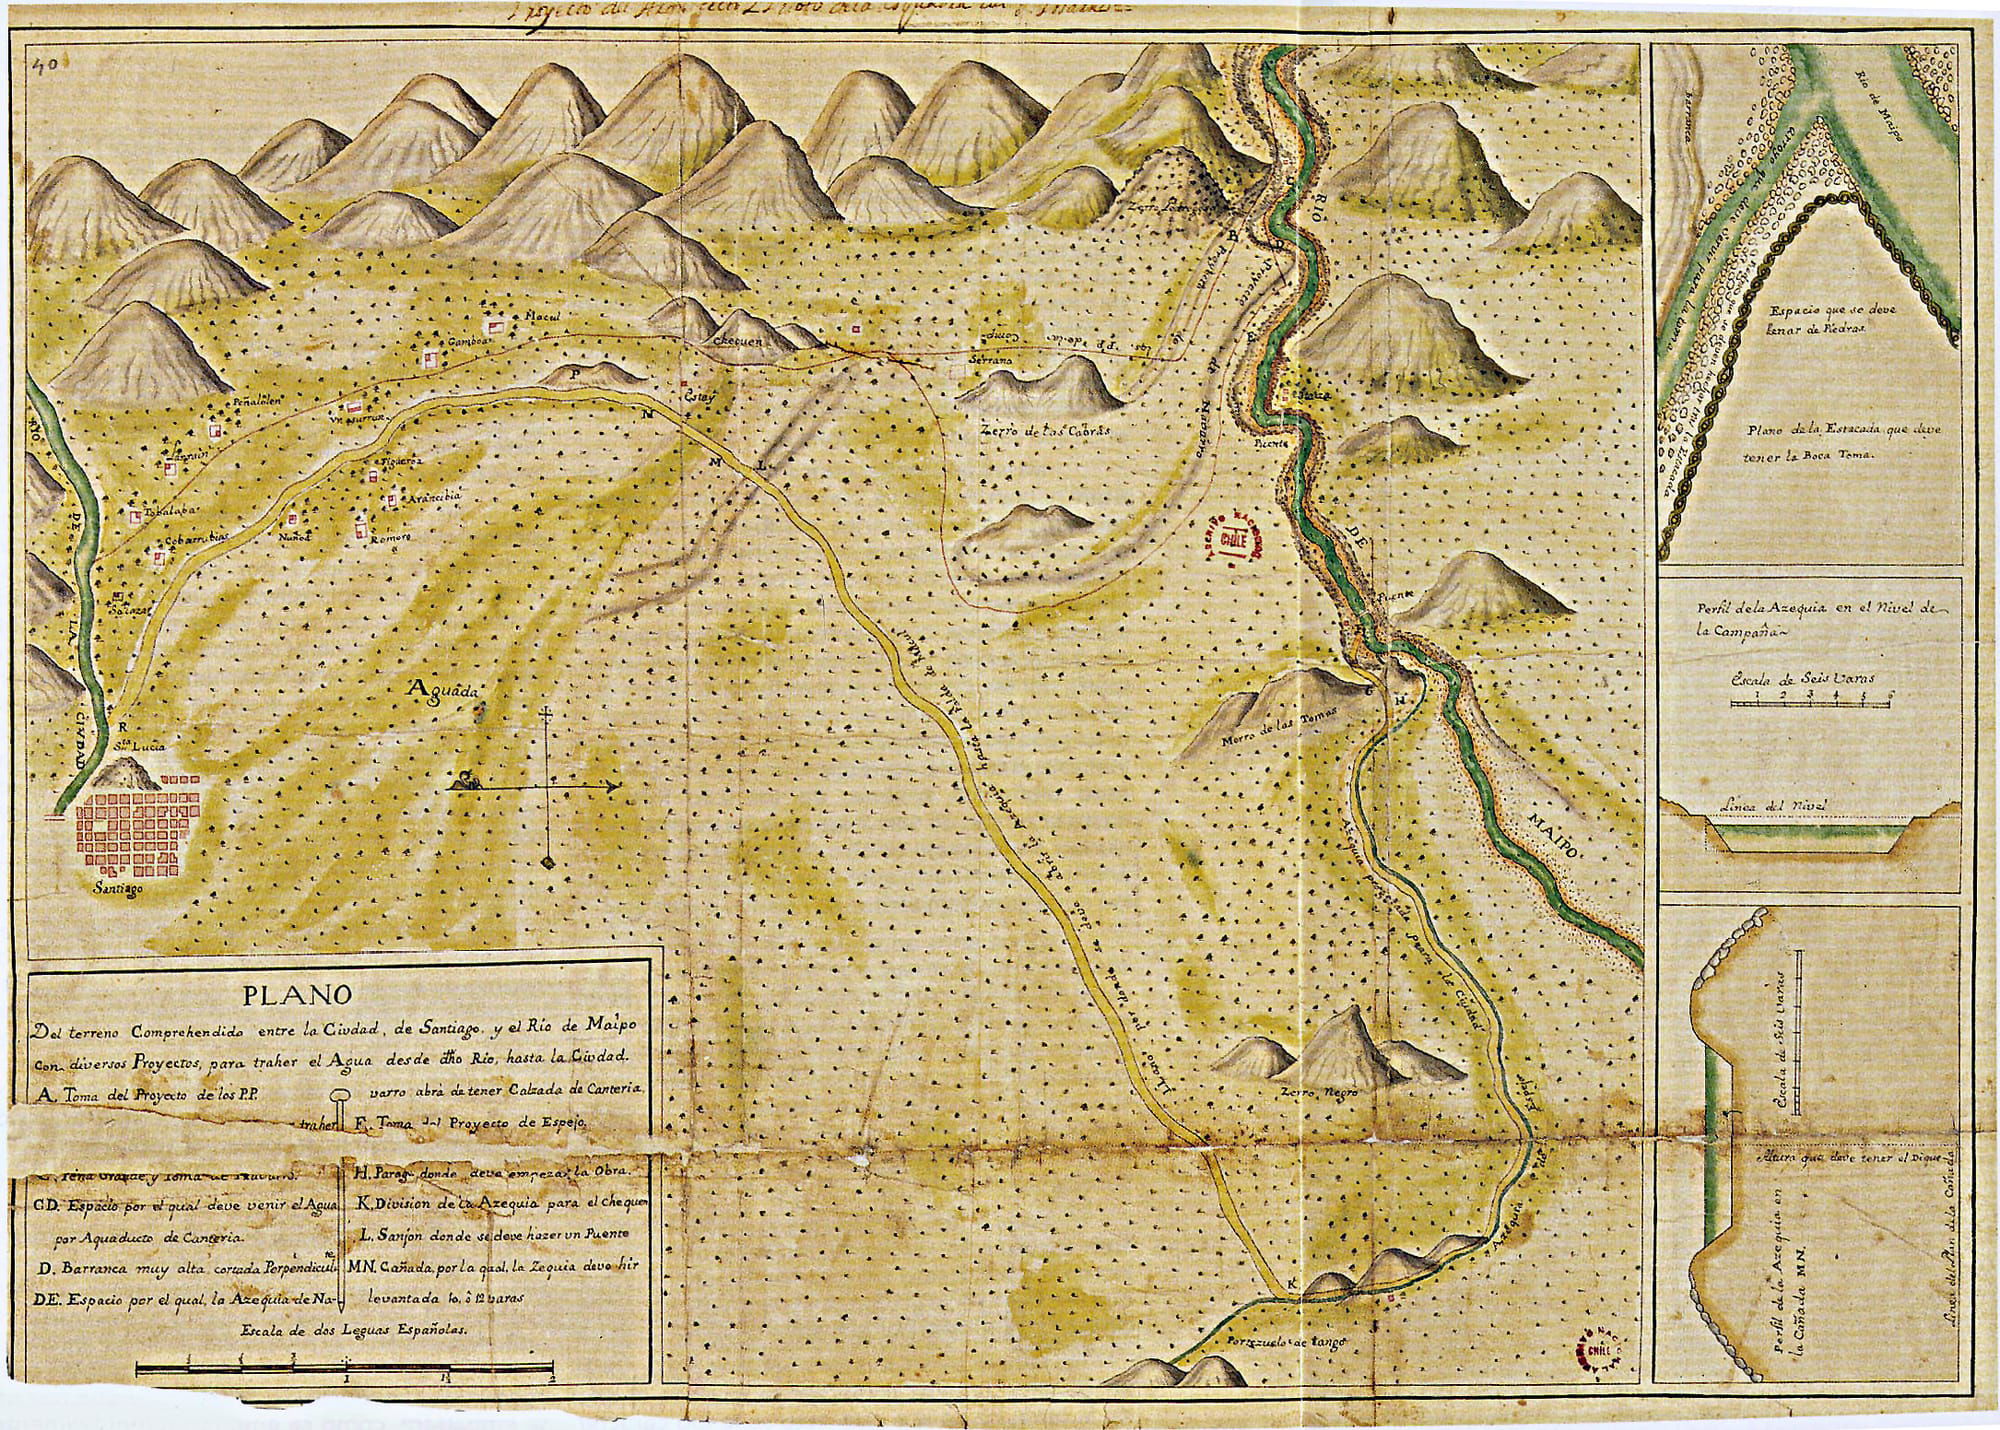 1740 Plano de Santiago